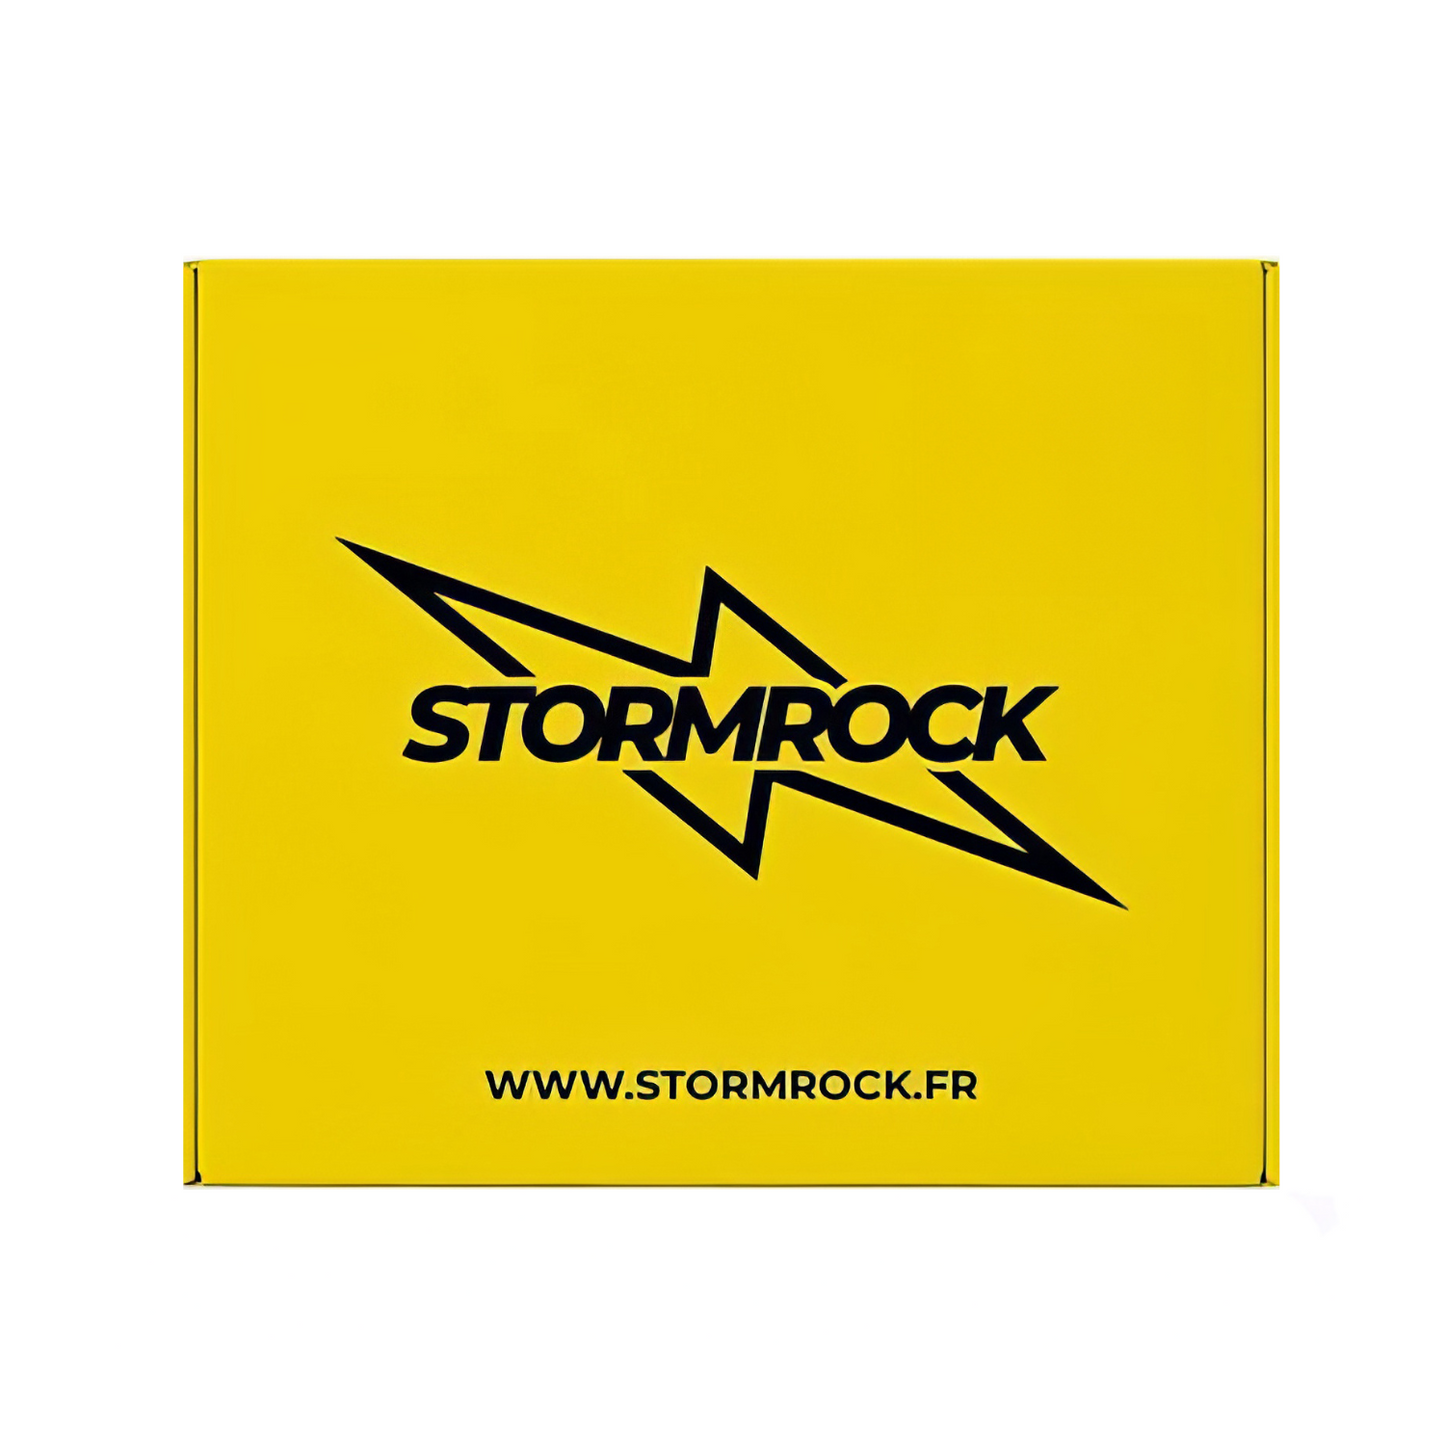 OFFERT - BOITE STORMROCK - Stormrock